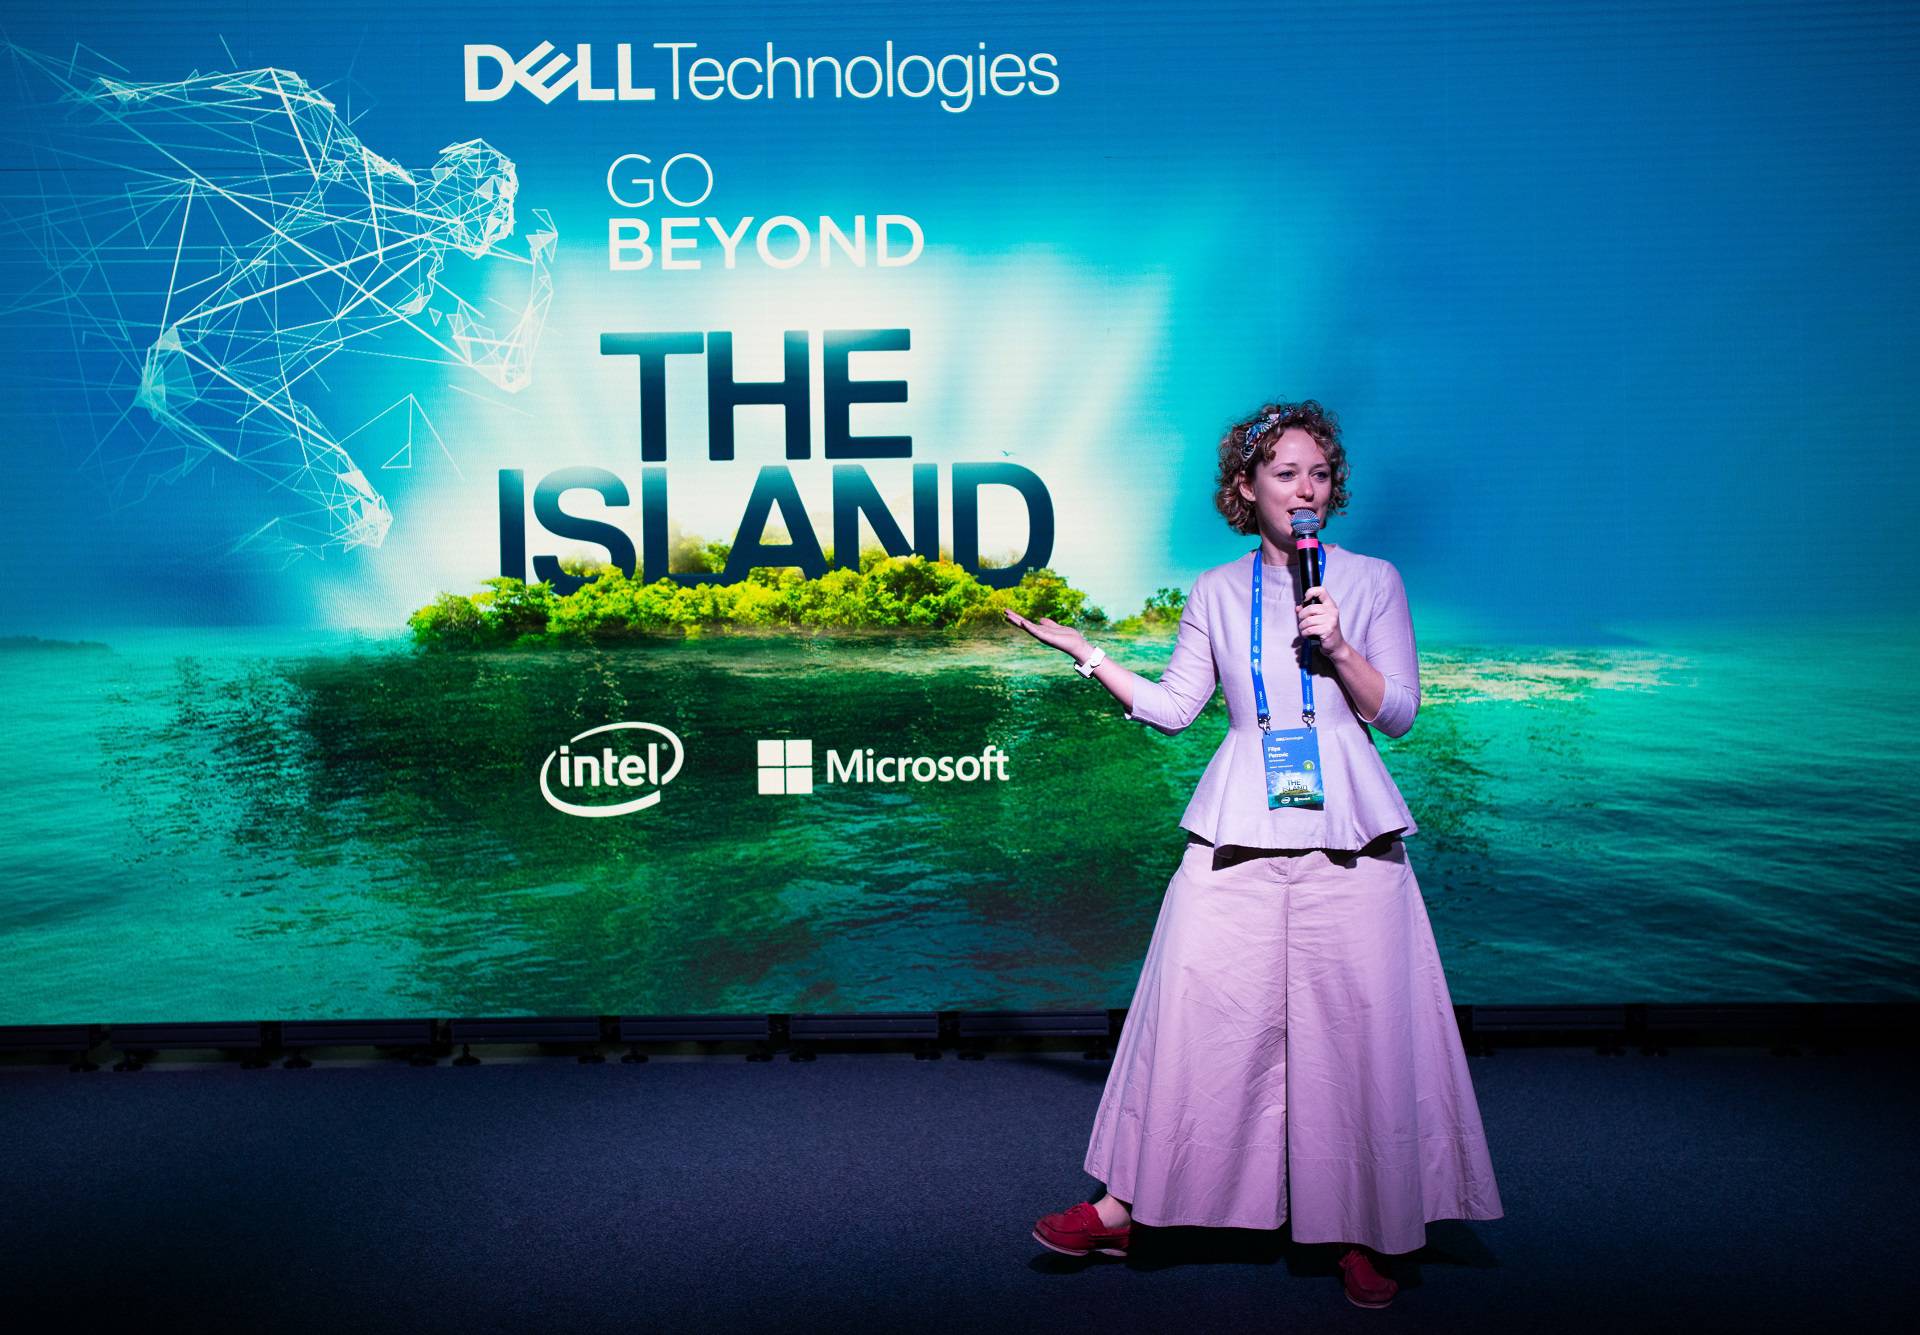 Dell je pretvorio Obonjan u otok tehnoloških inovacija